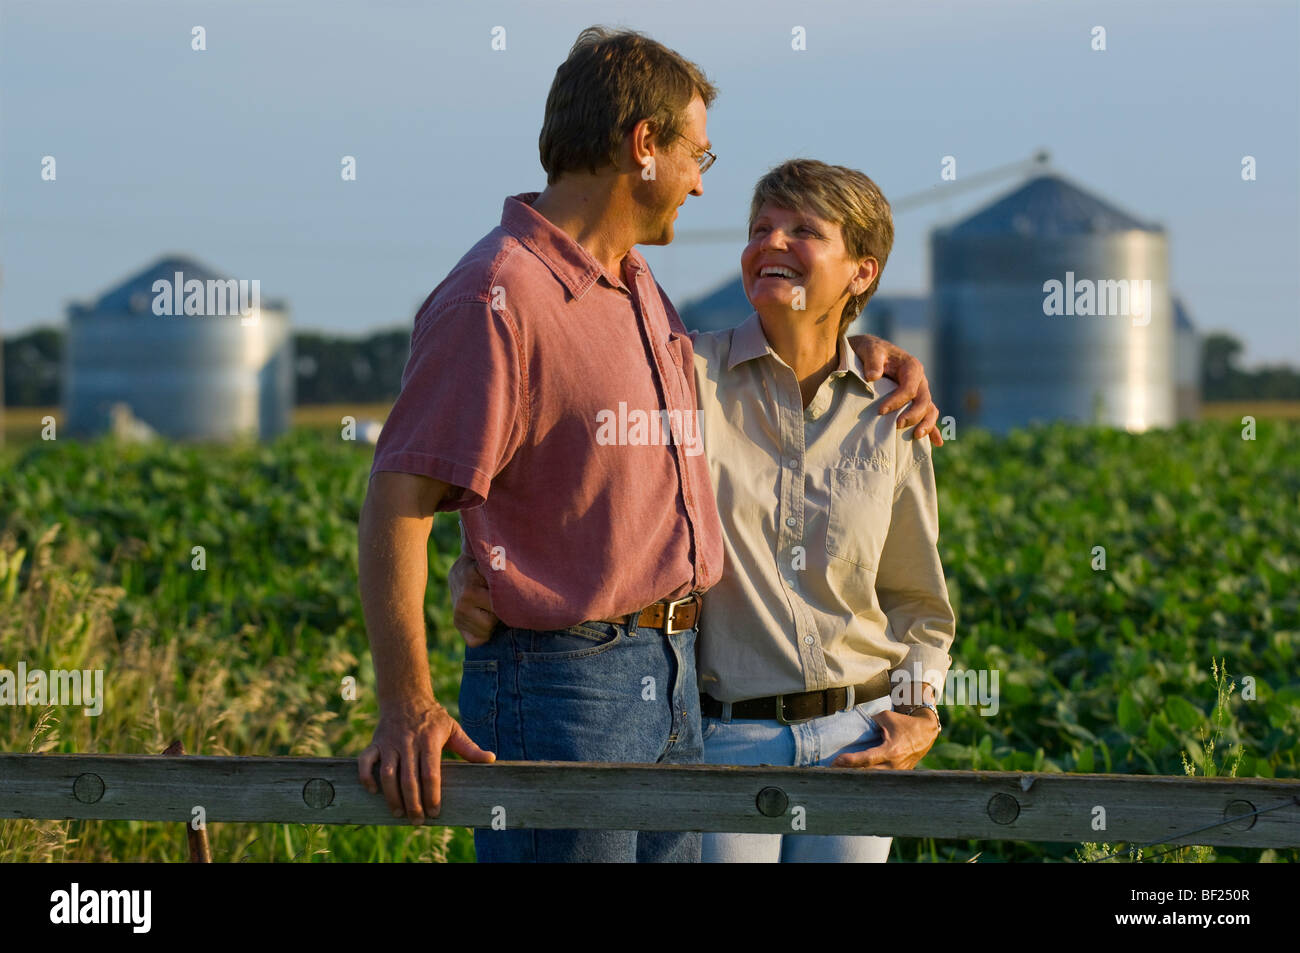 Mann und Frau Bauern in ihrem Soja-Bereich einige persönliche Momente miteinander teilen, mit Getreidesilos im Hintergrund / USA. Stockfoto